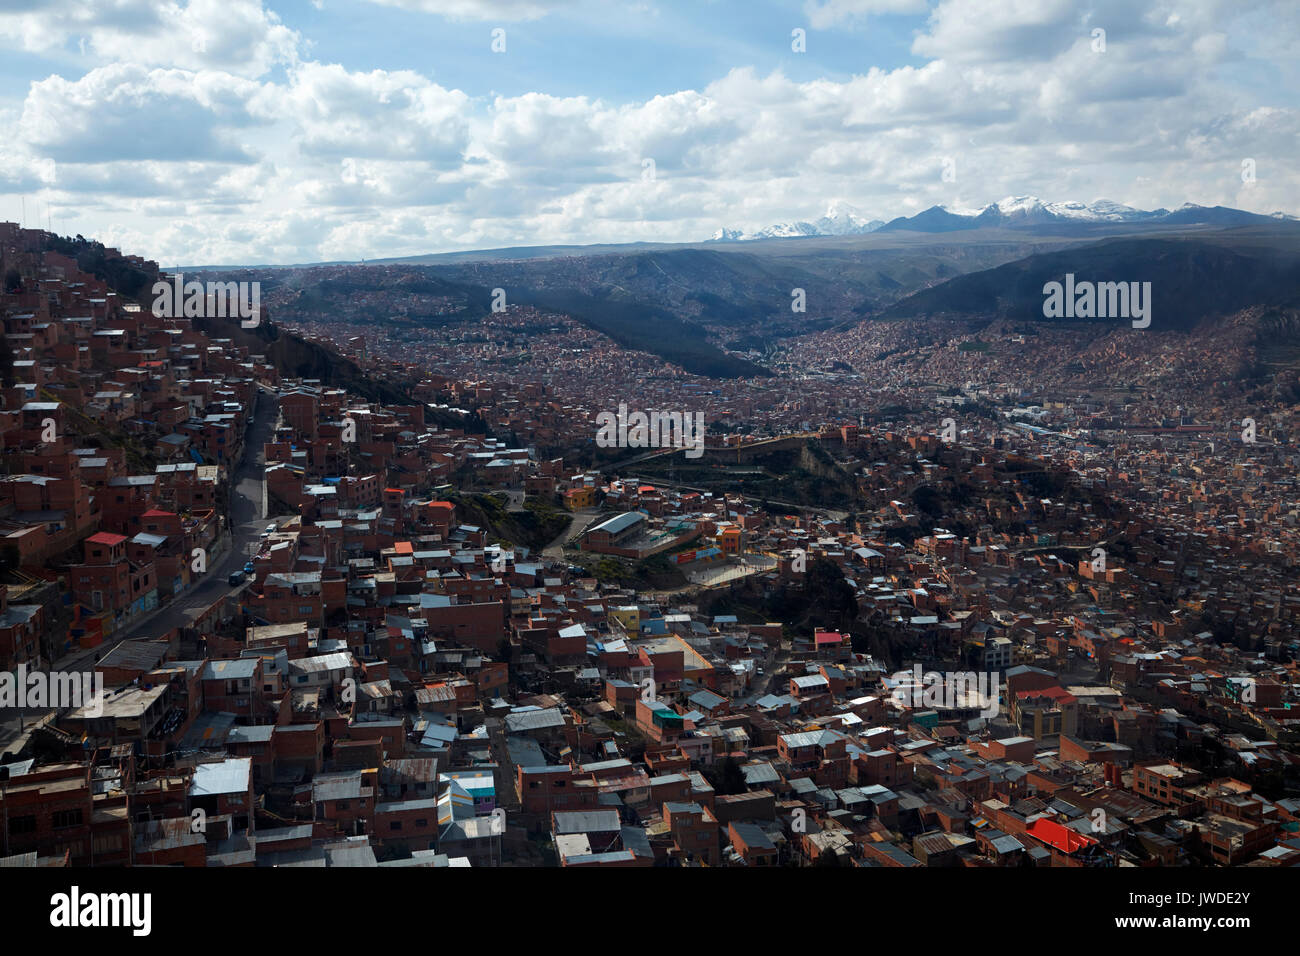 Logement en briques sur une colline escarpée, La Paz, Bolivie, Amérique du Sud Banque D'Images